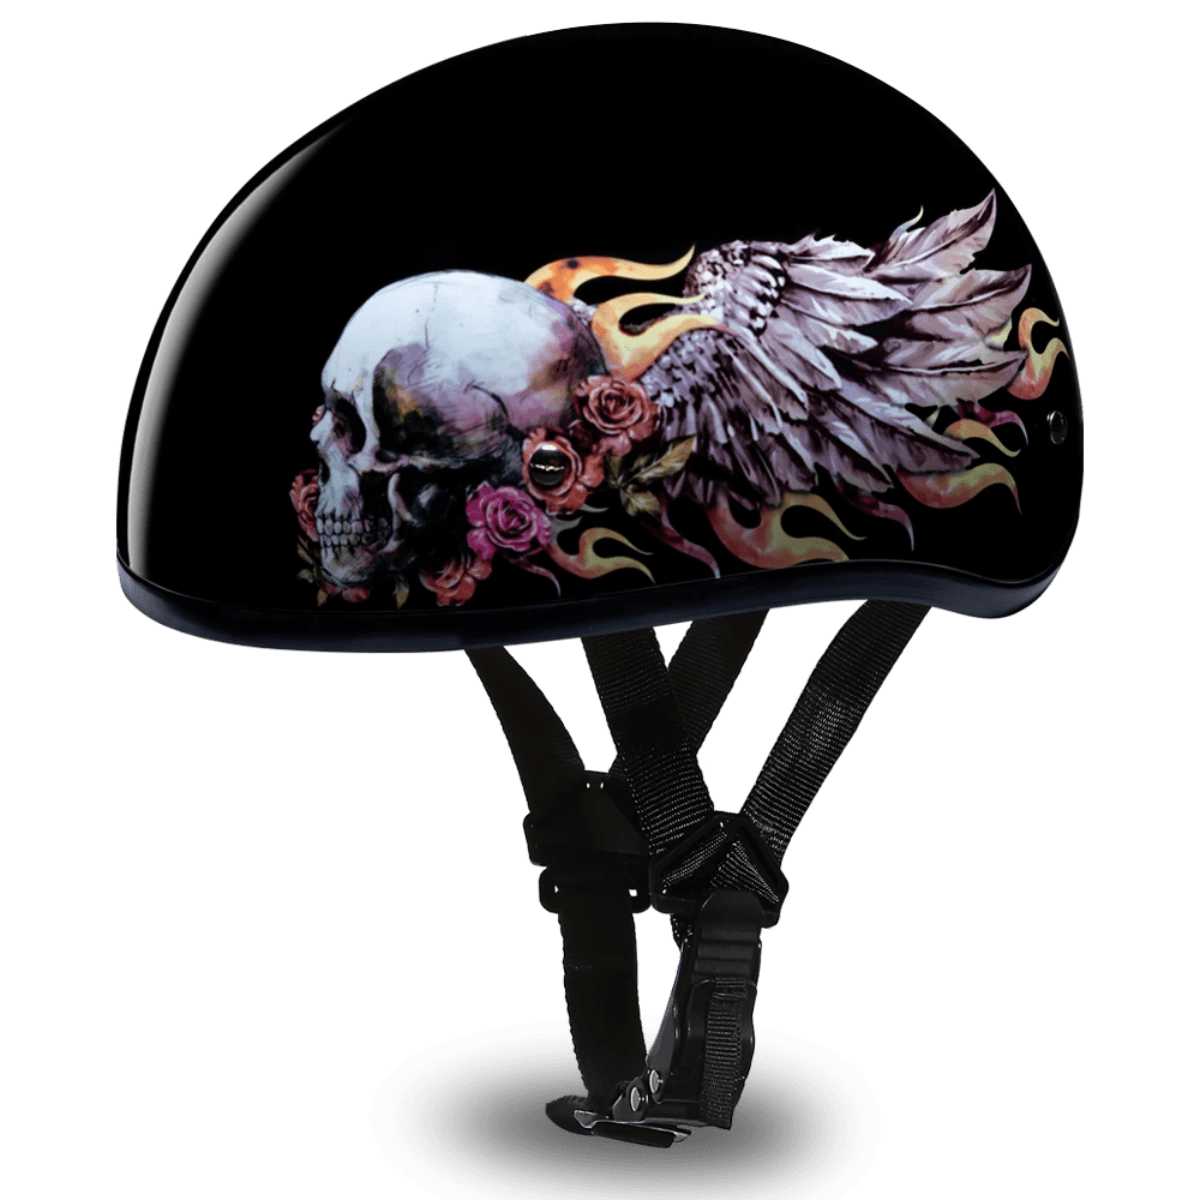 Daytona D.O.T Skull Wings Cap Helmet - American Legend Rider